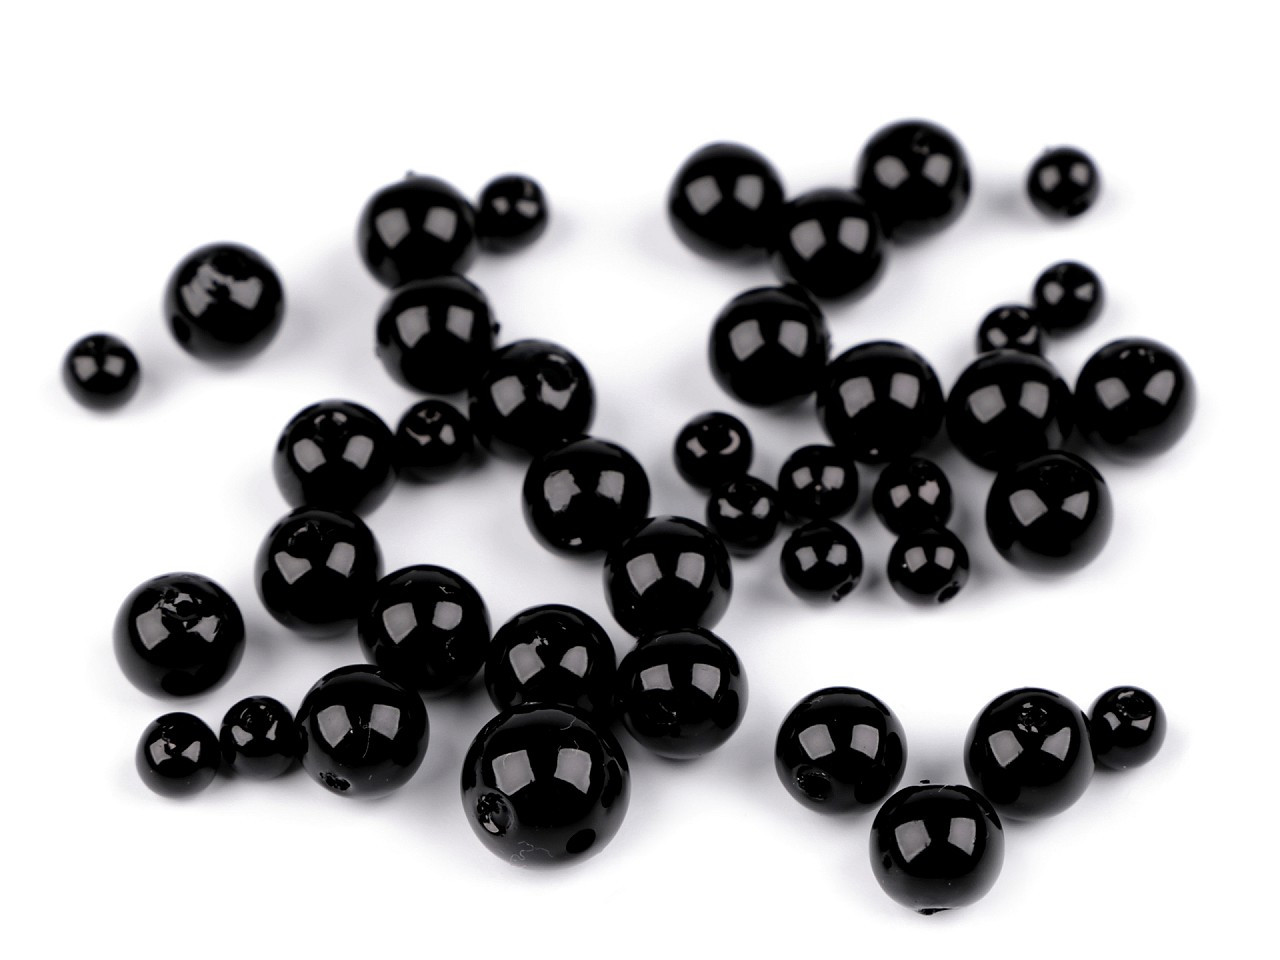 Fotografie Plastové voskové korálky / perly Glance mix velikostí, barva F75 černá